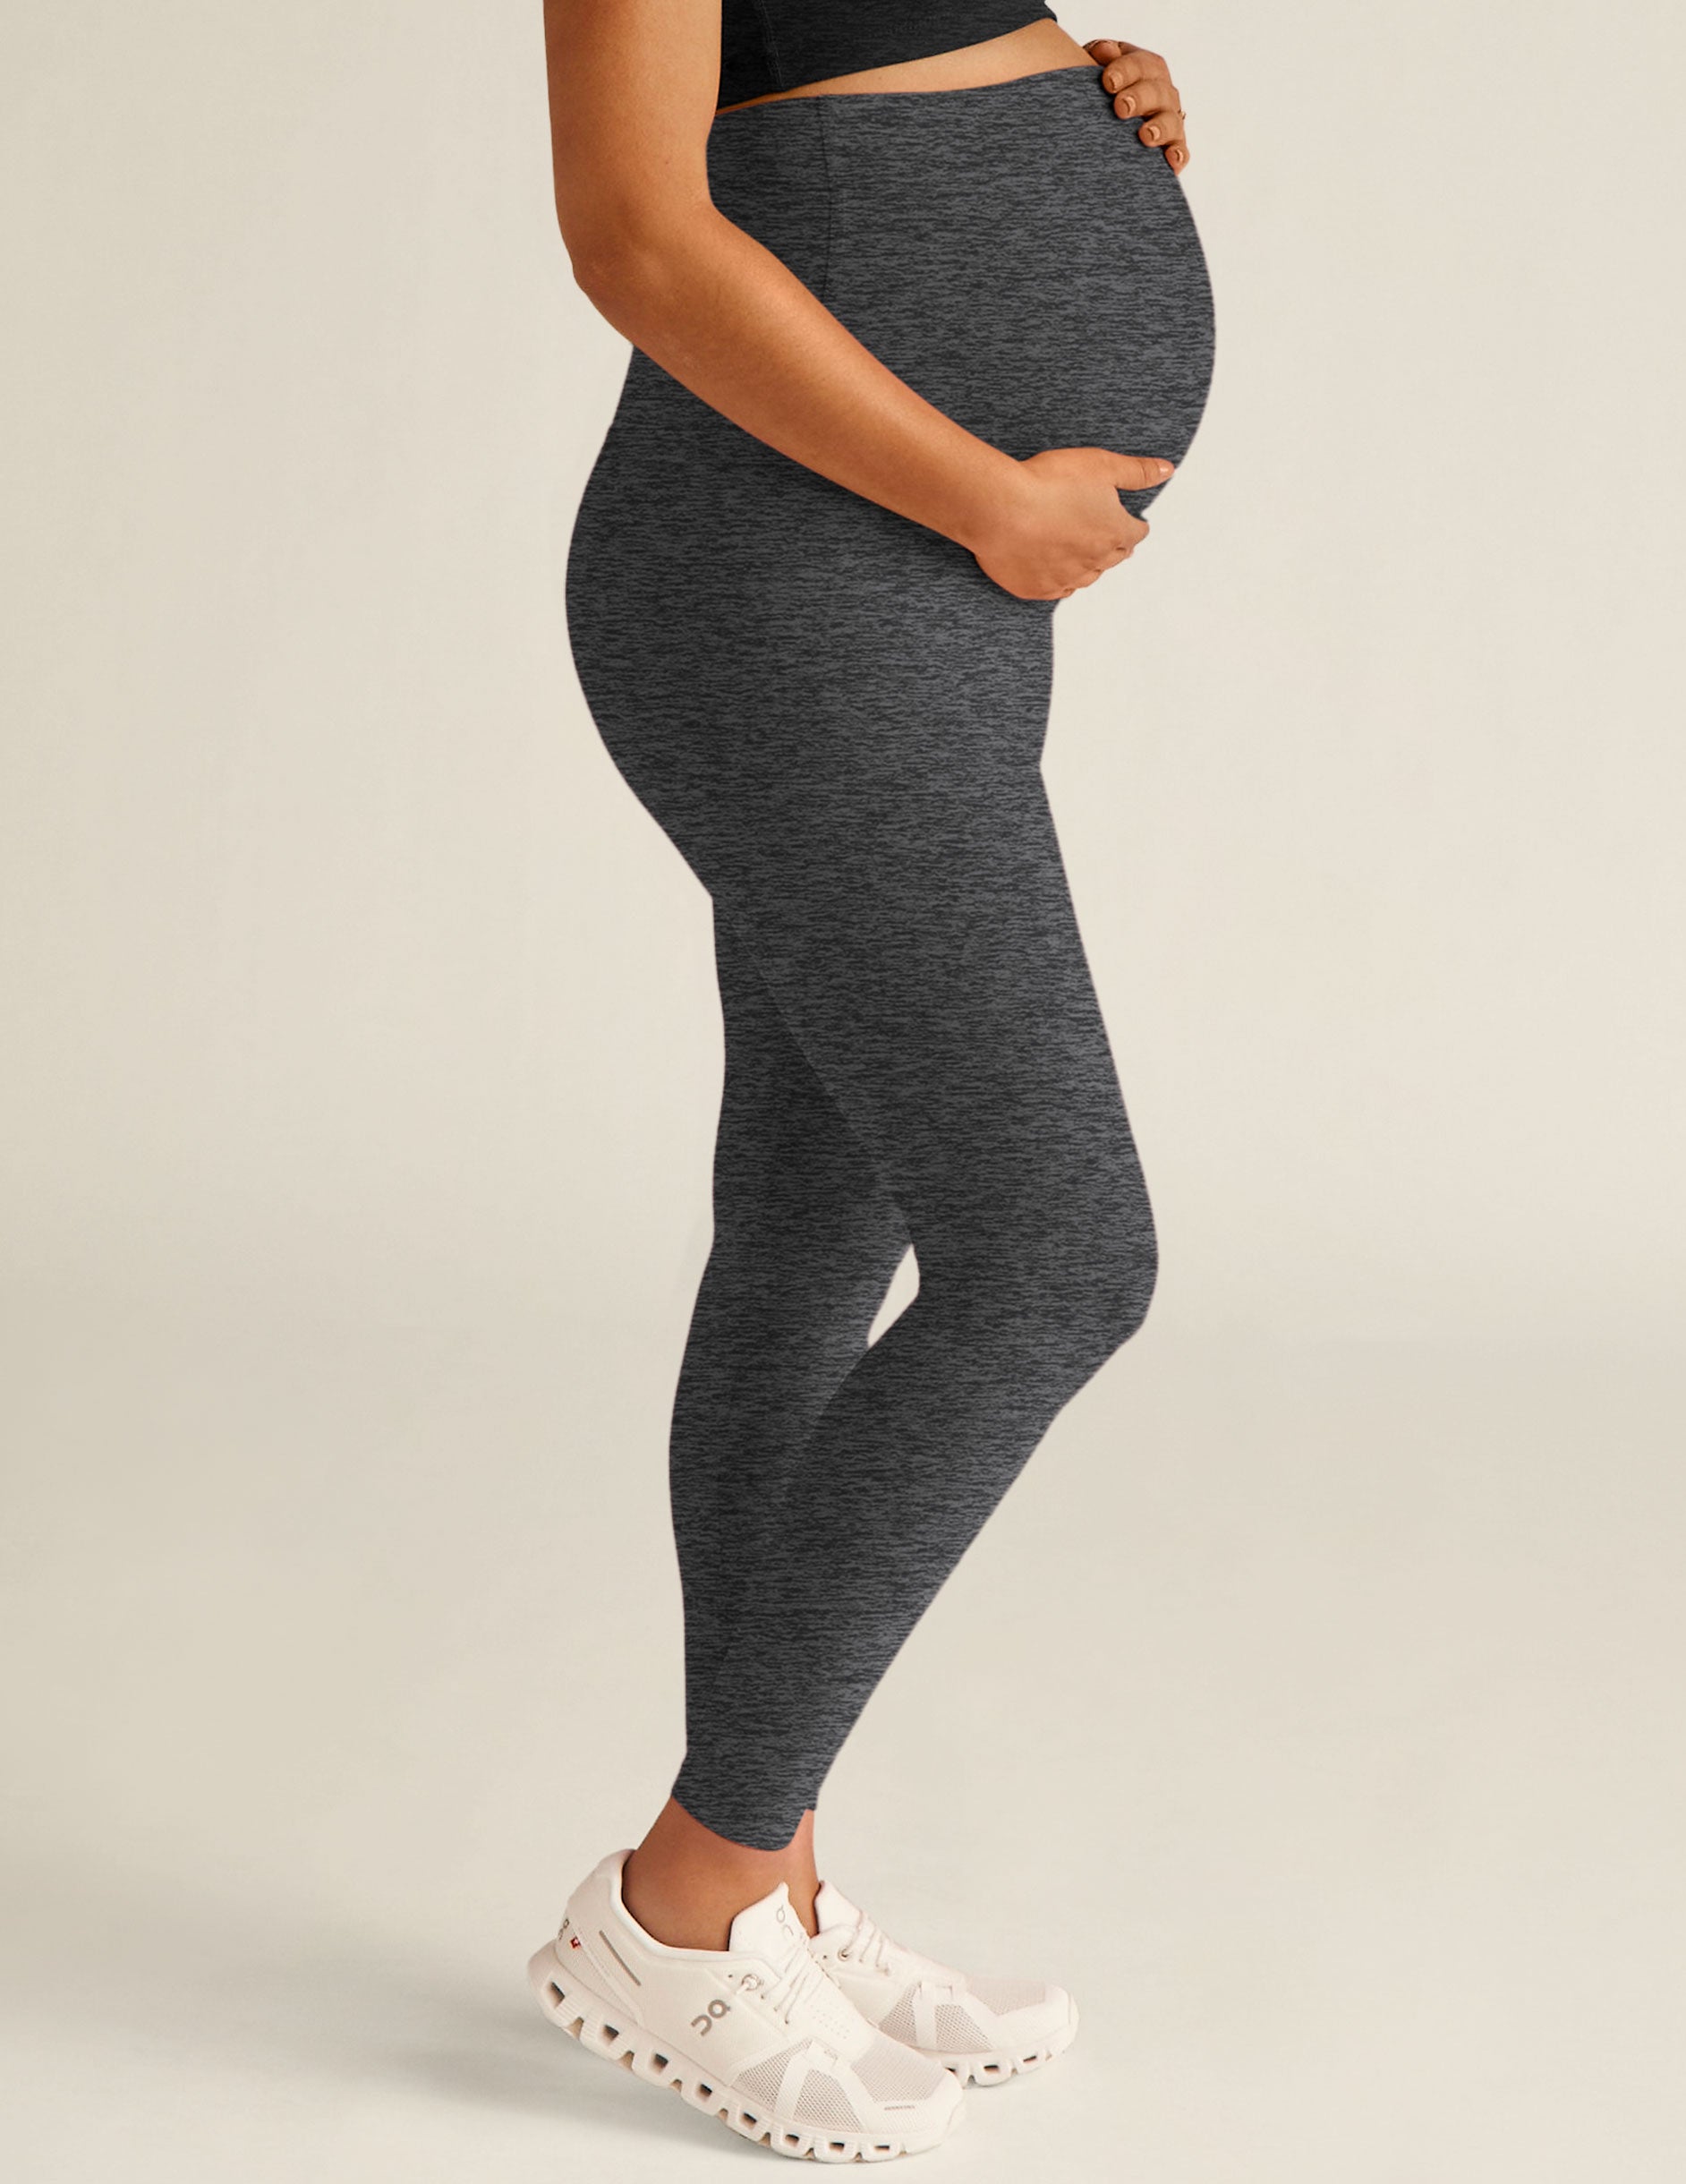 Tech-fleece maternity leggings, Maternity pants